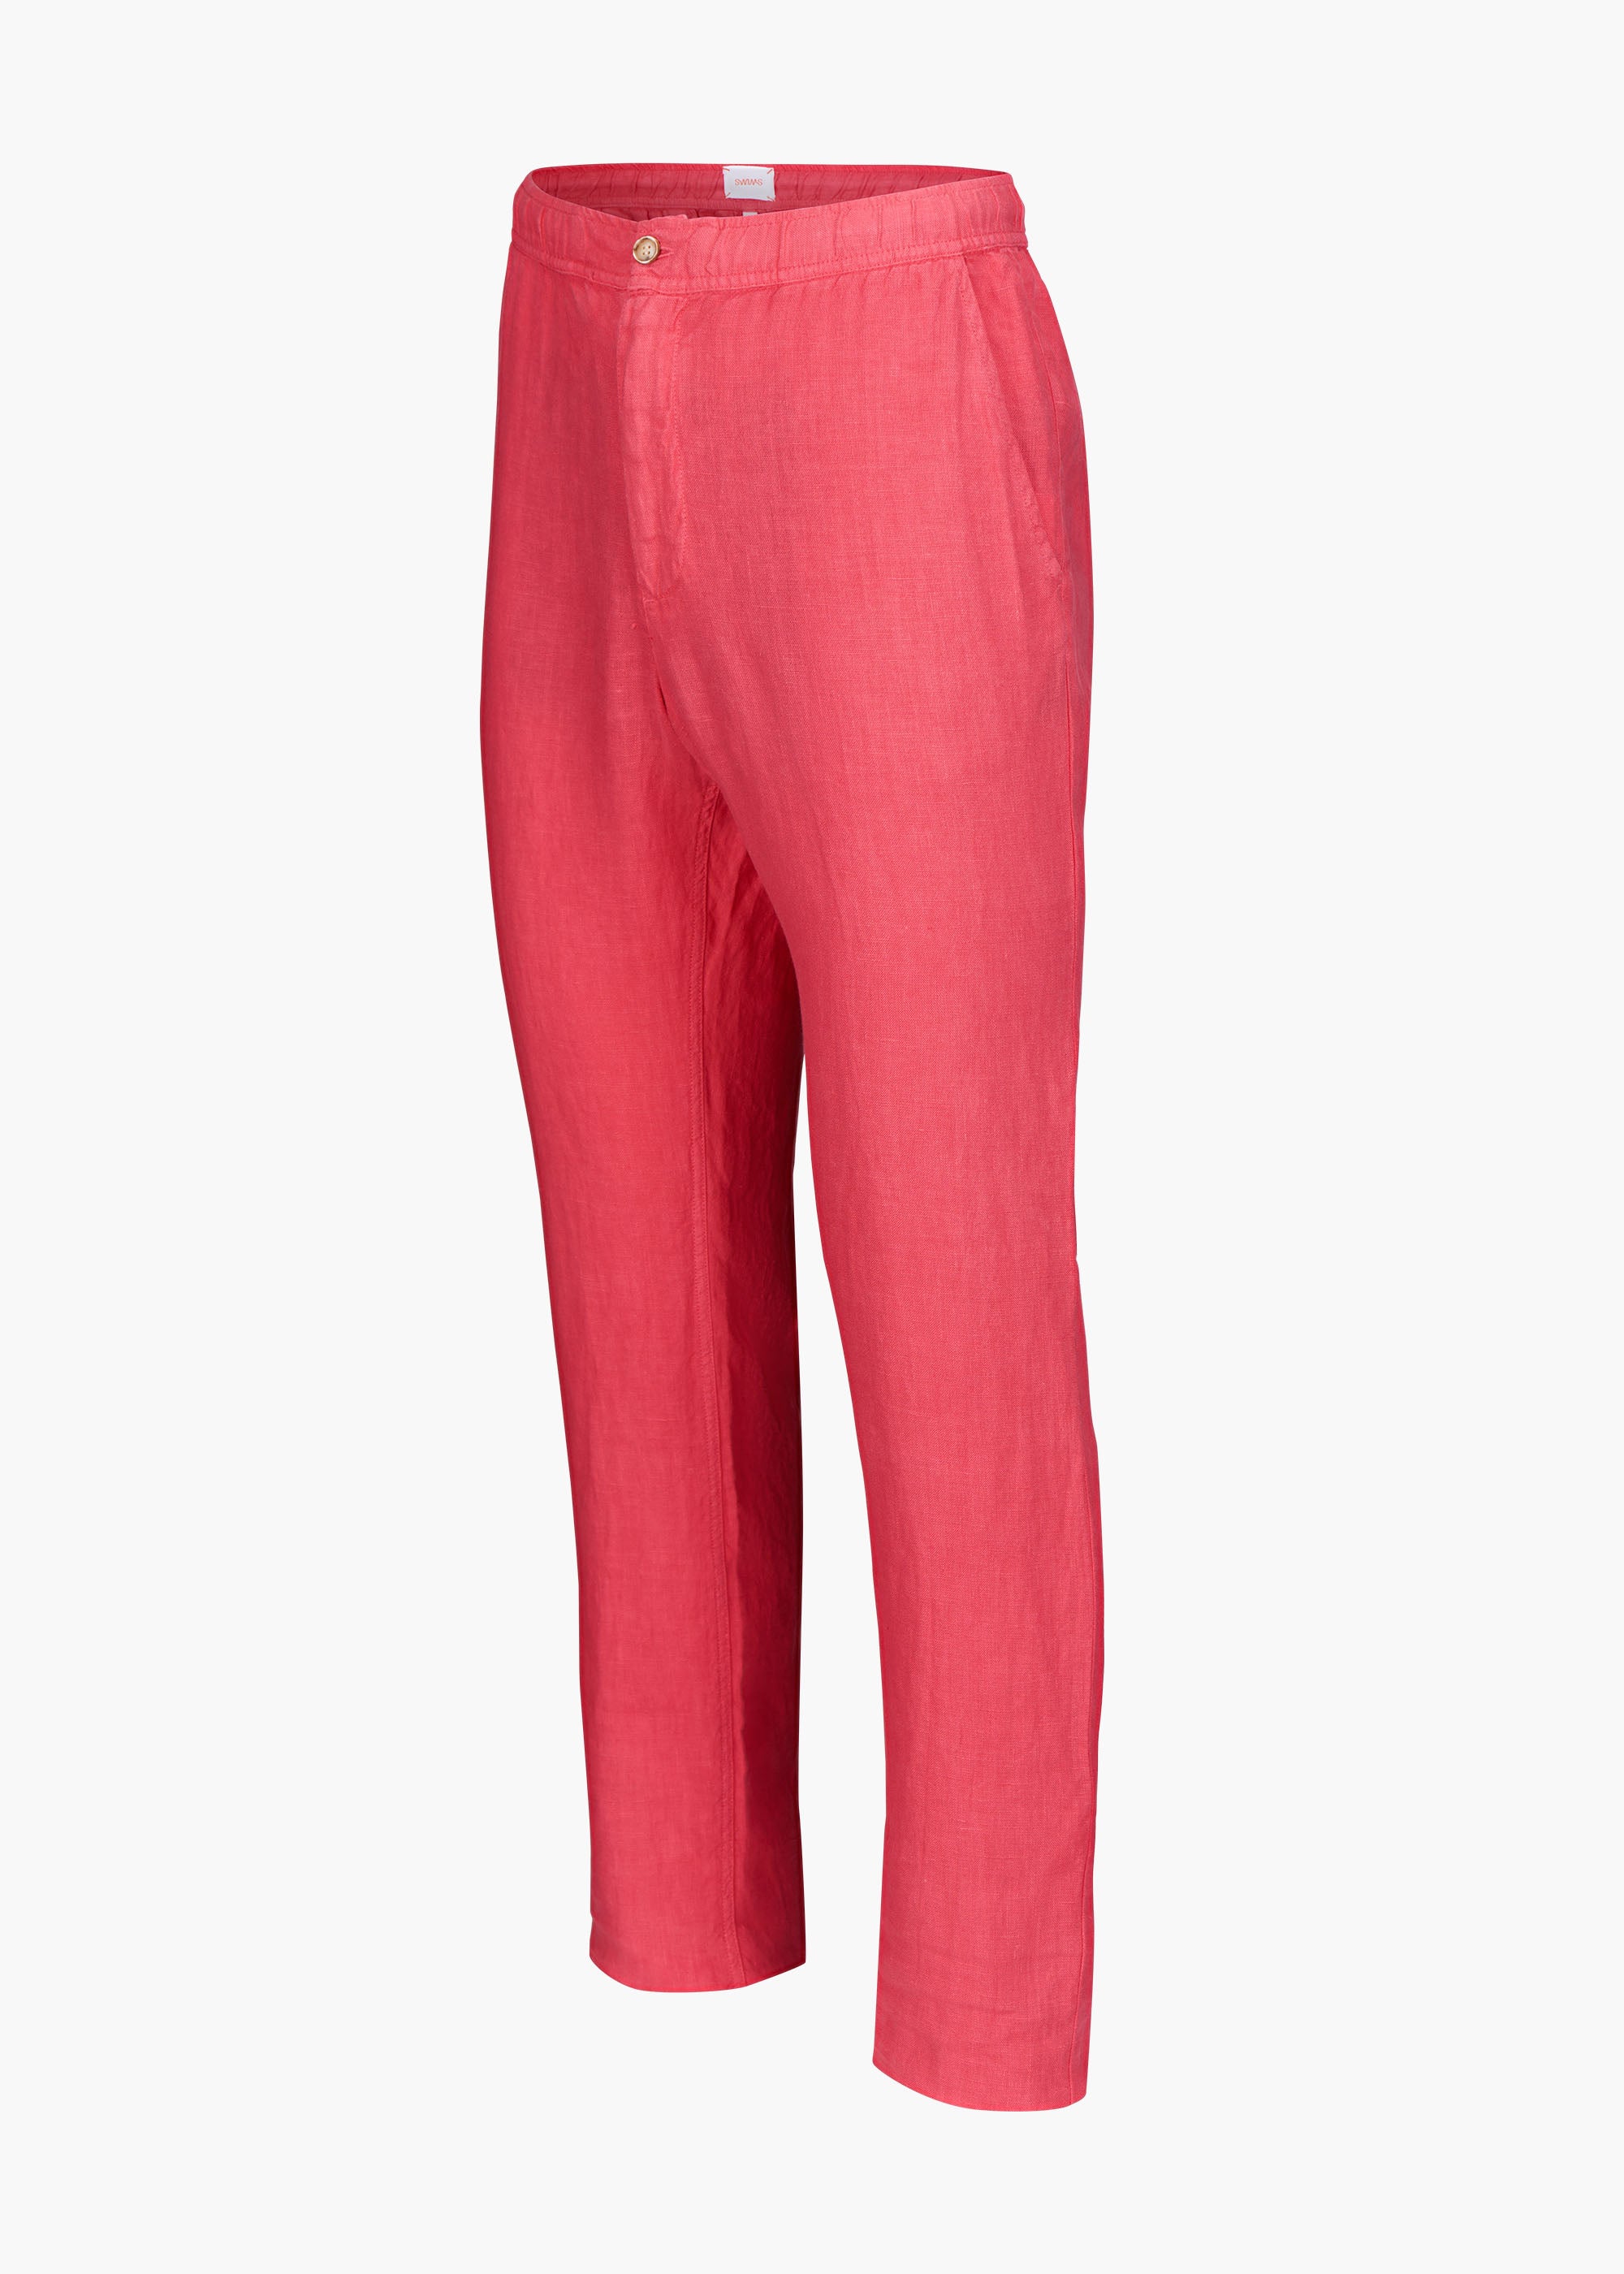 Beige Linen Pants | Men's Linen Pants Slim Fit | Coast Clothing Co.